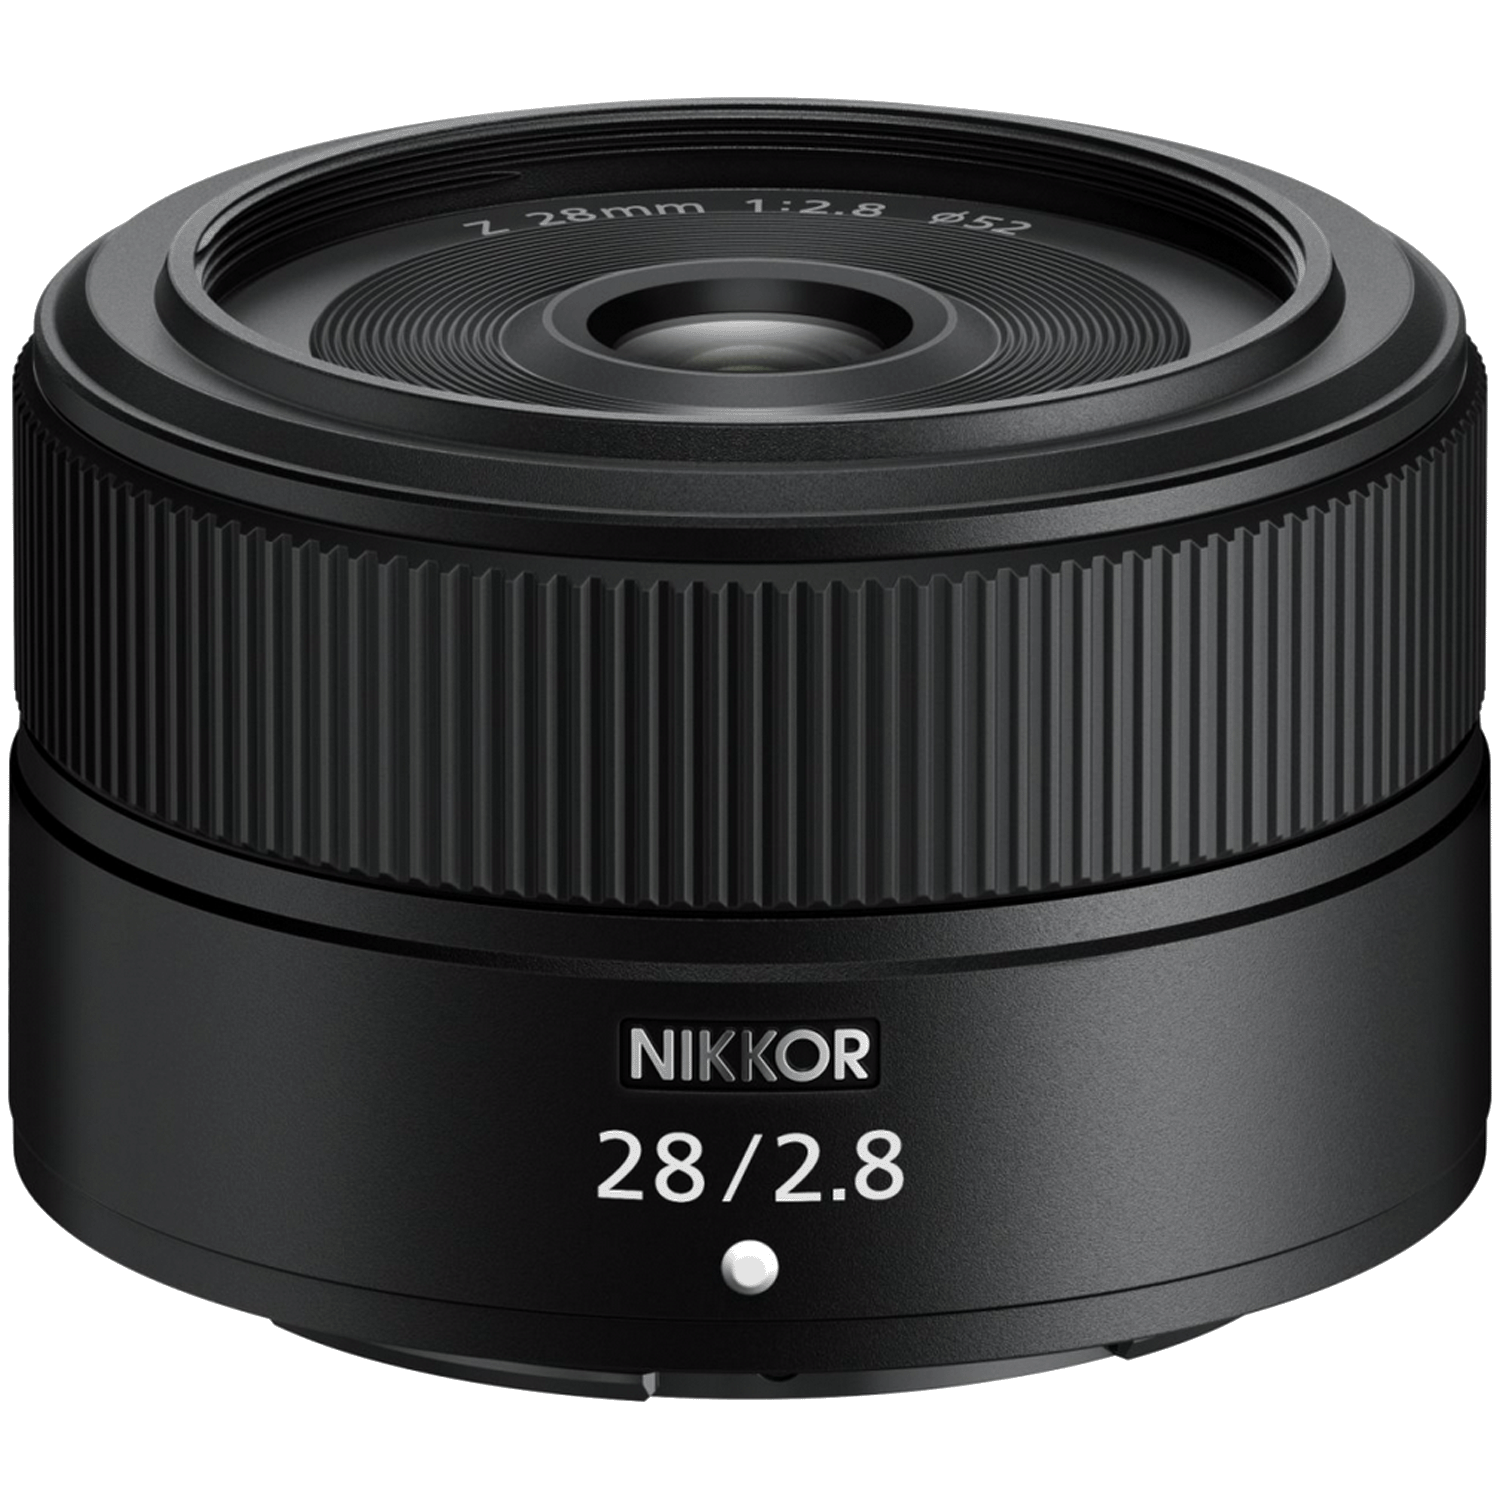 Nikon 28/2,8 AF Z Nikkor kaufen bei top-foto.de